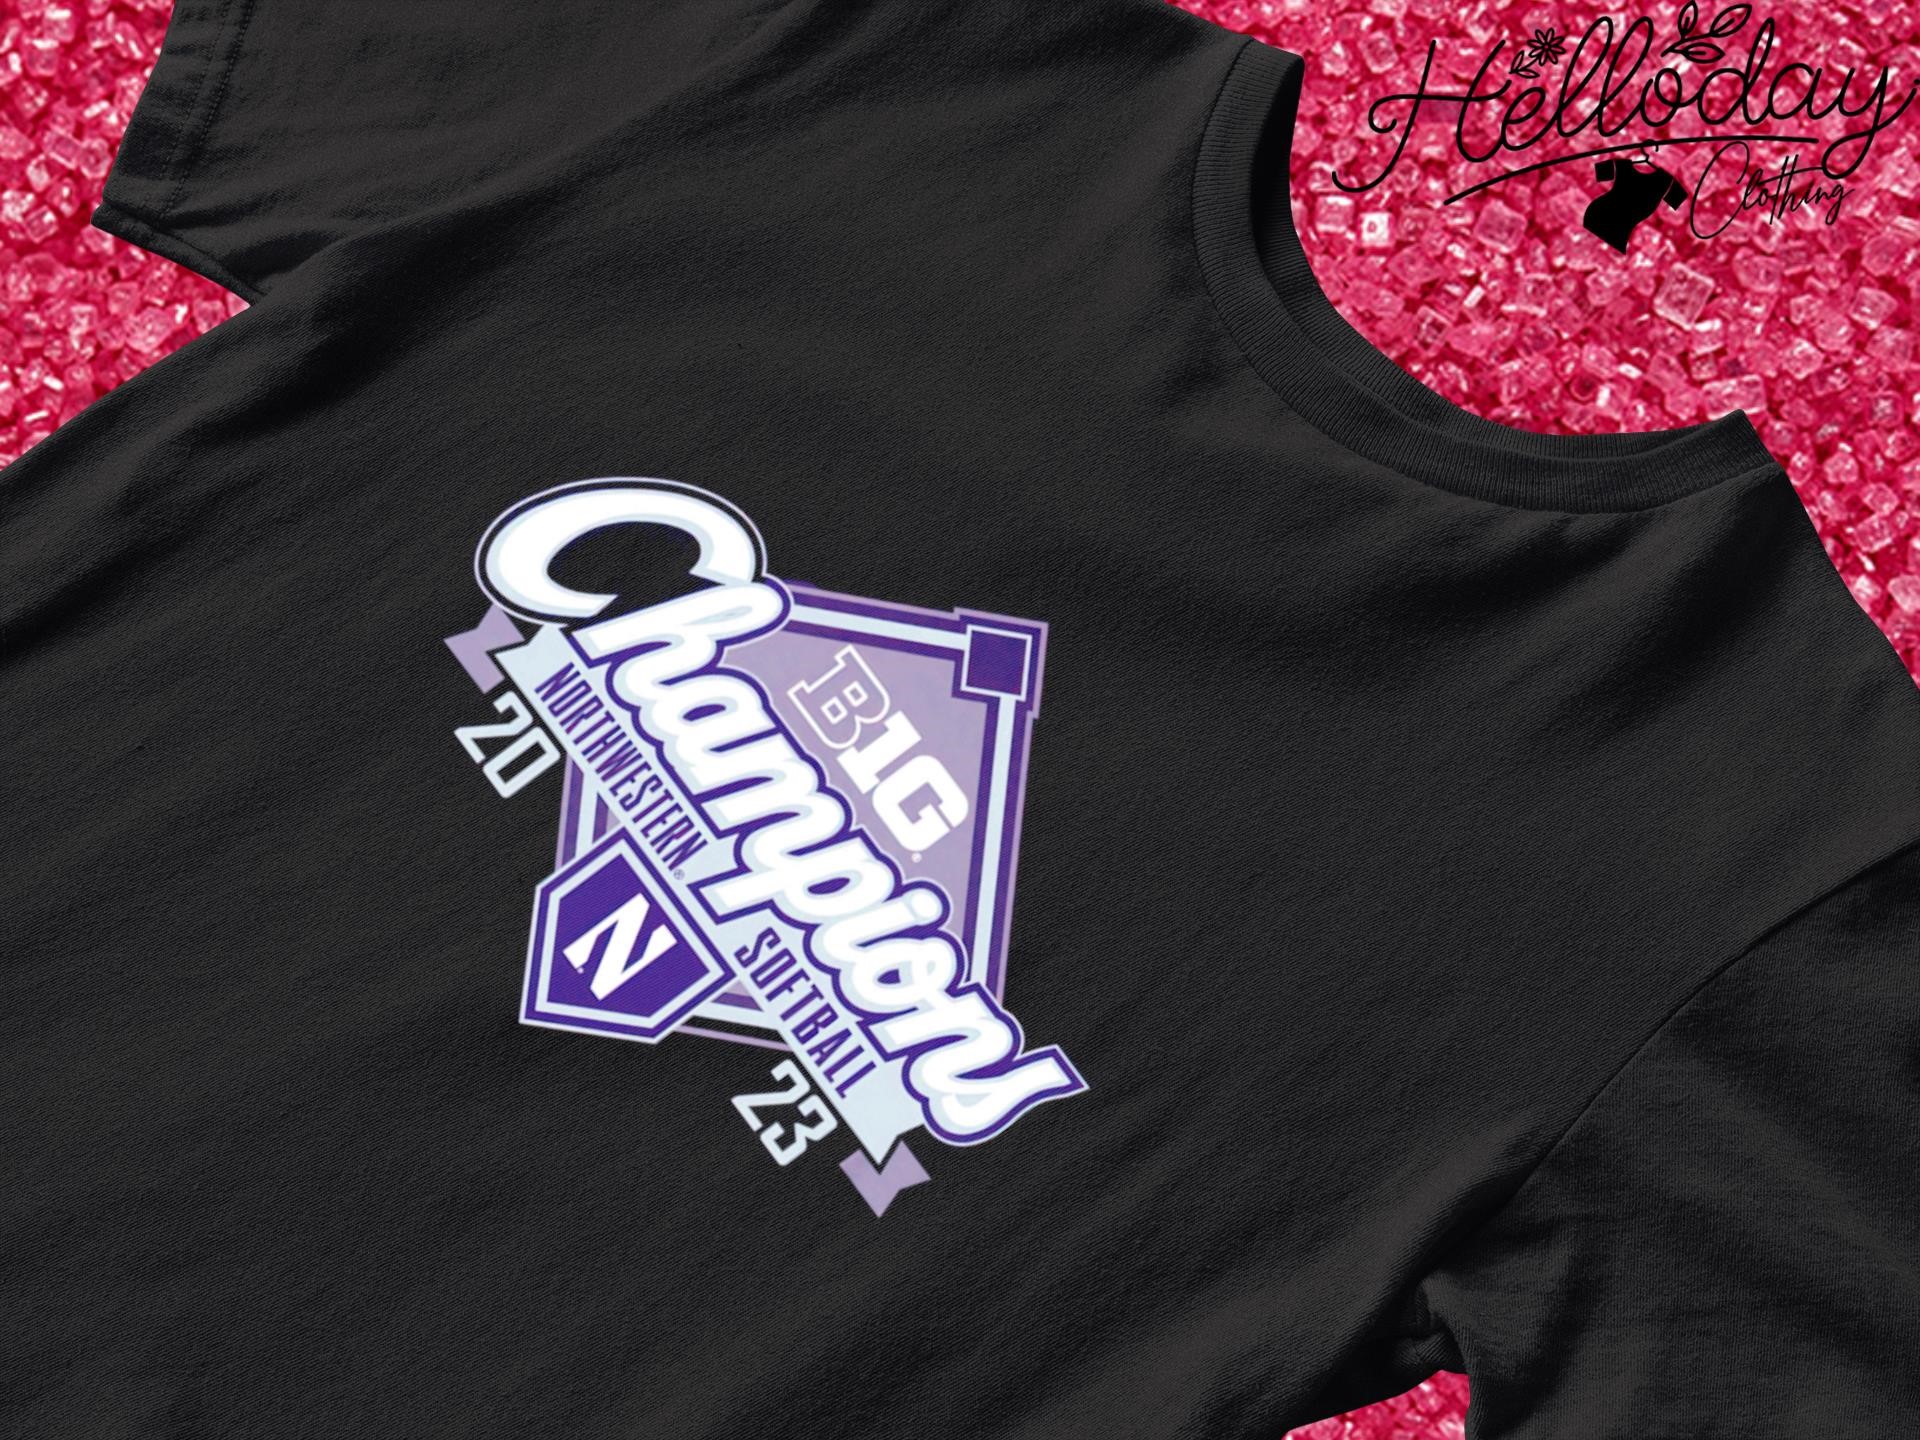 Purple Northwestern Wildcats Big Ten Softball Regular Season Champions 2023 shirt